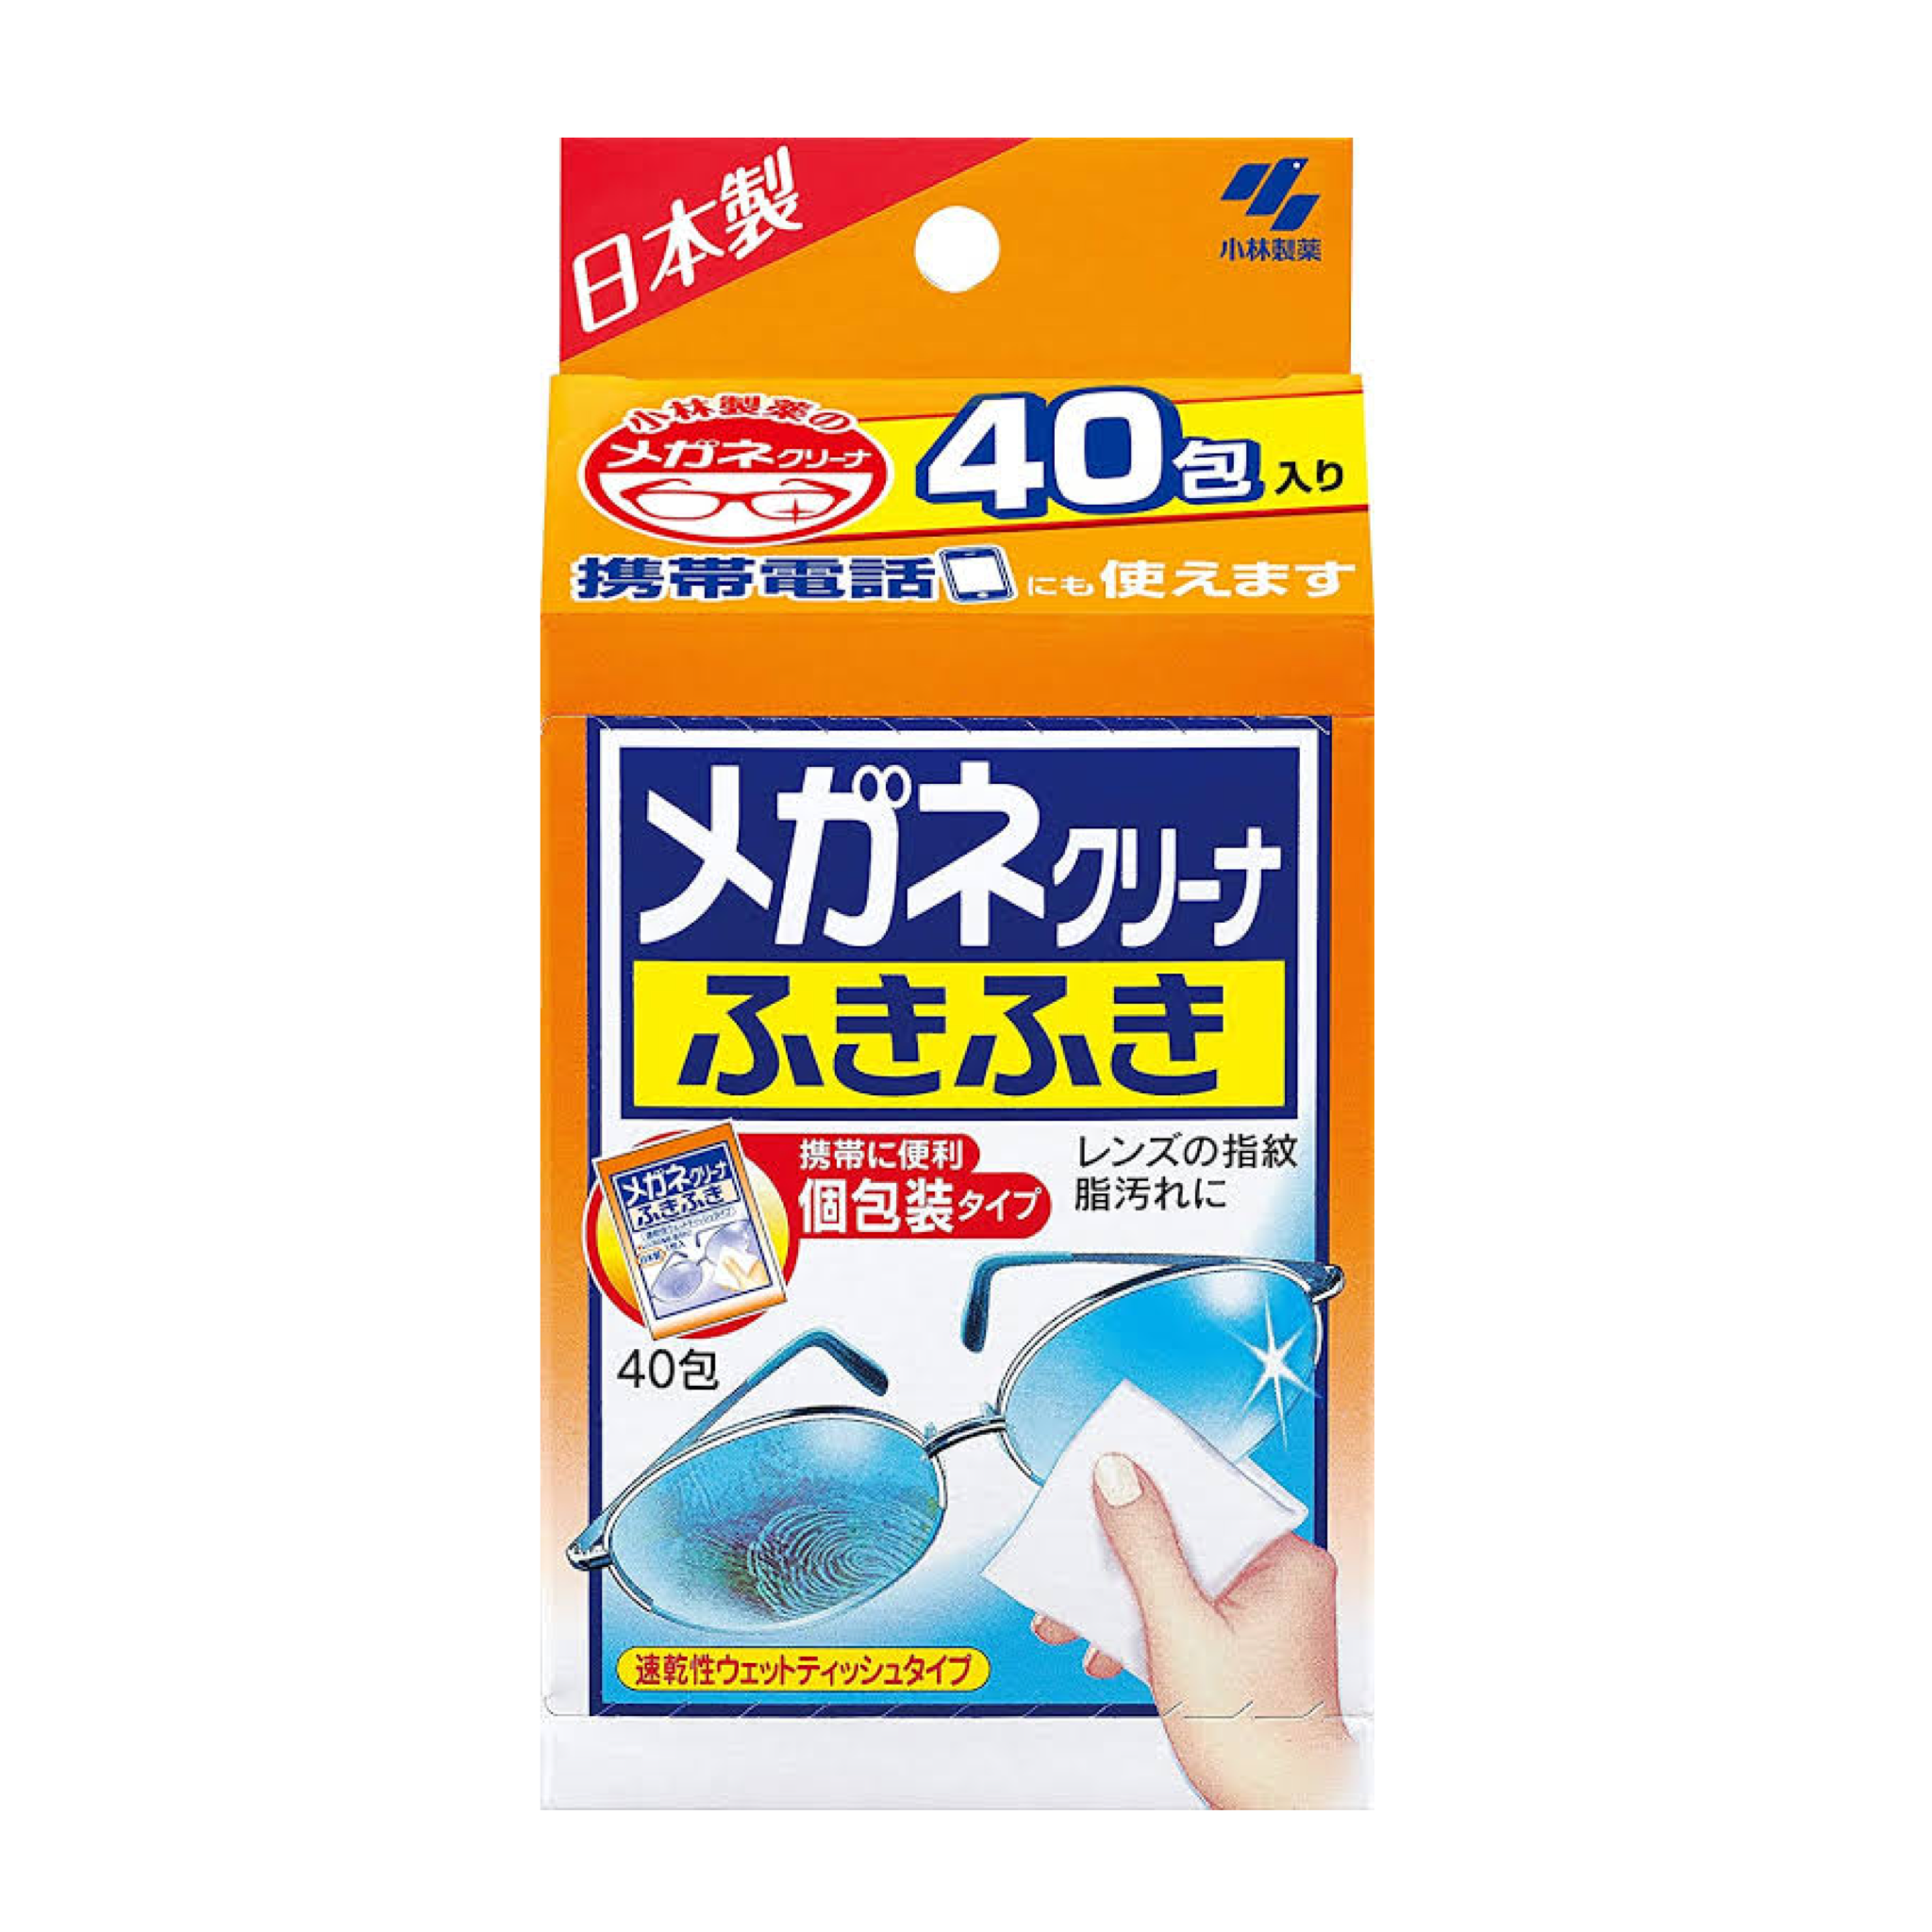 Kobayashi ClearWipe Lens Cleaner ผ้าเช็ดเลนส์แว่น เลนส์กล้อง 40 แผ่น